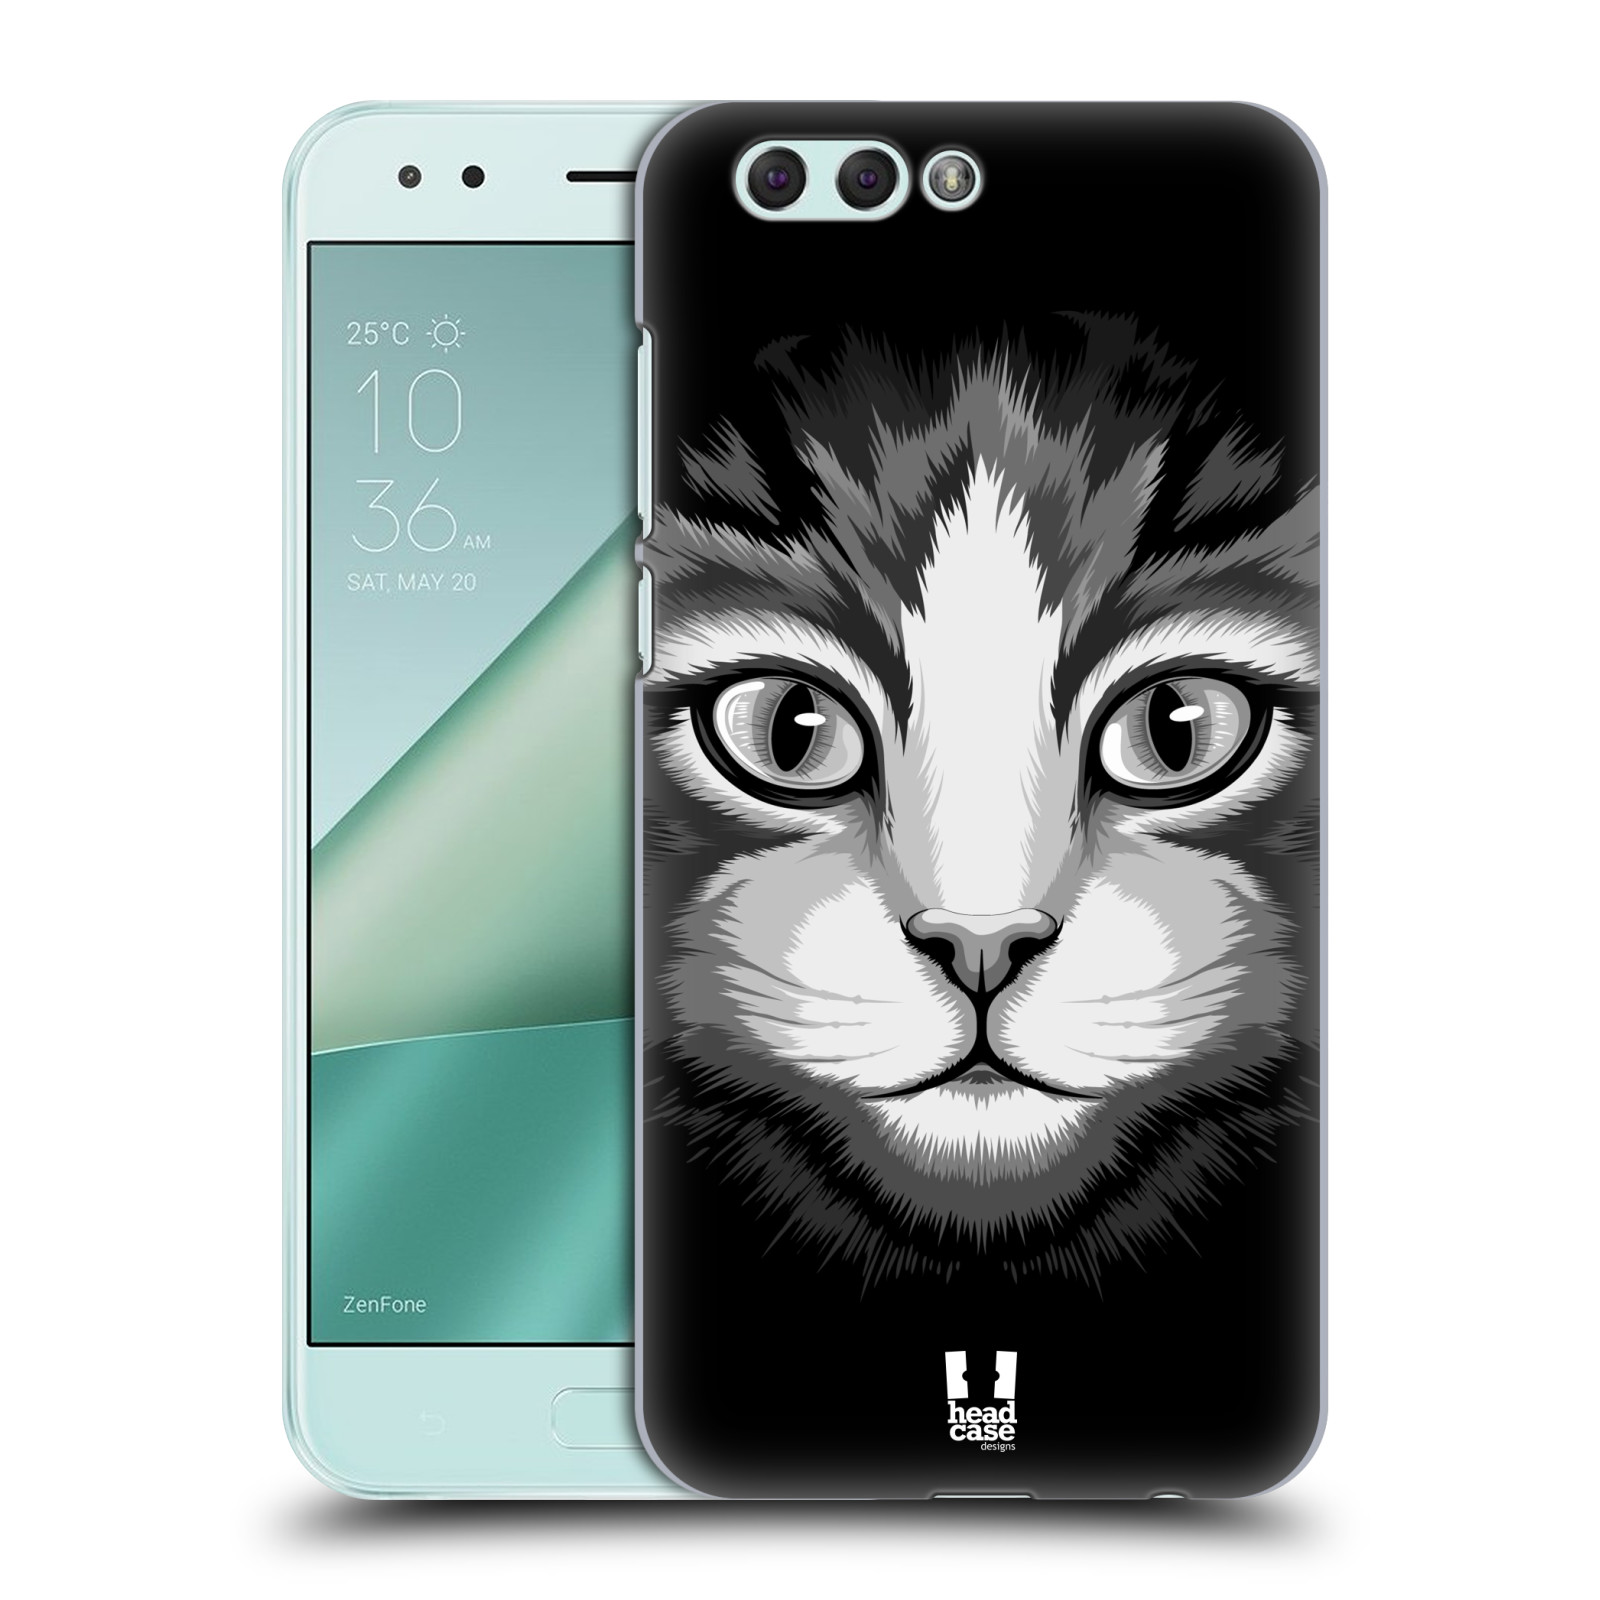 HEAD CASE plastový obal na mobil Asus Zenfone 4 ZE554KL vzor Zvíře kreslená tvář 2 kočička